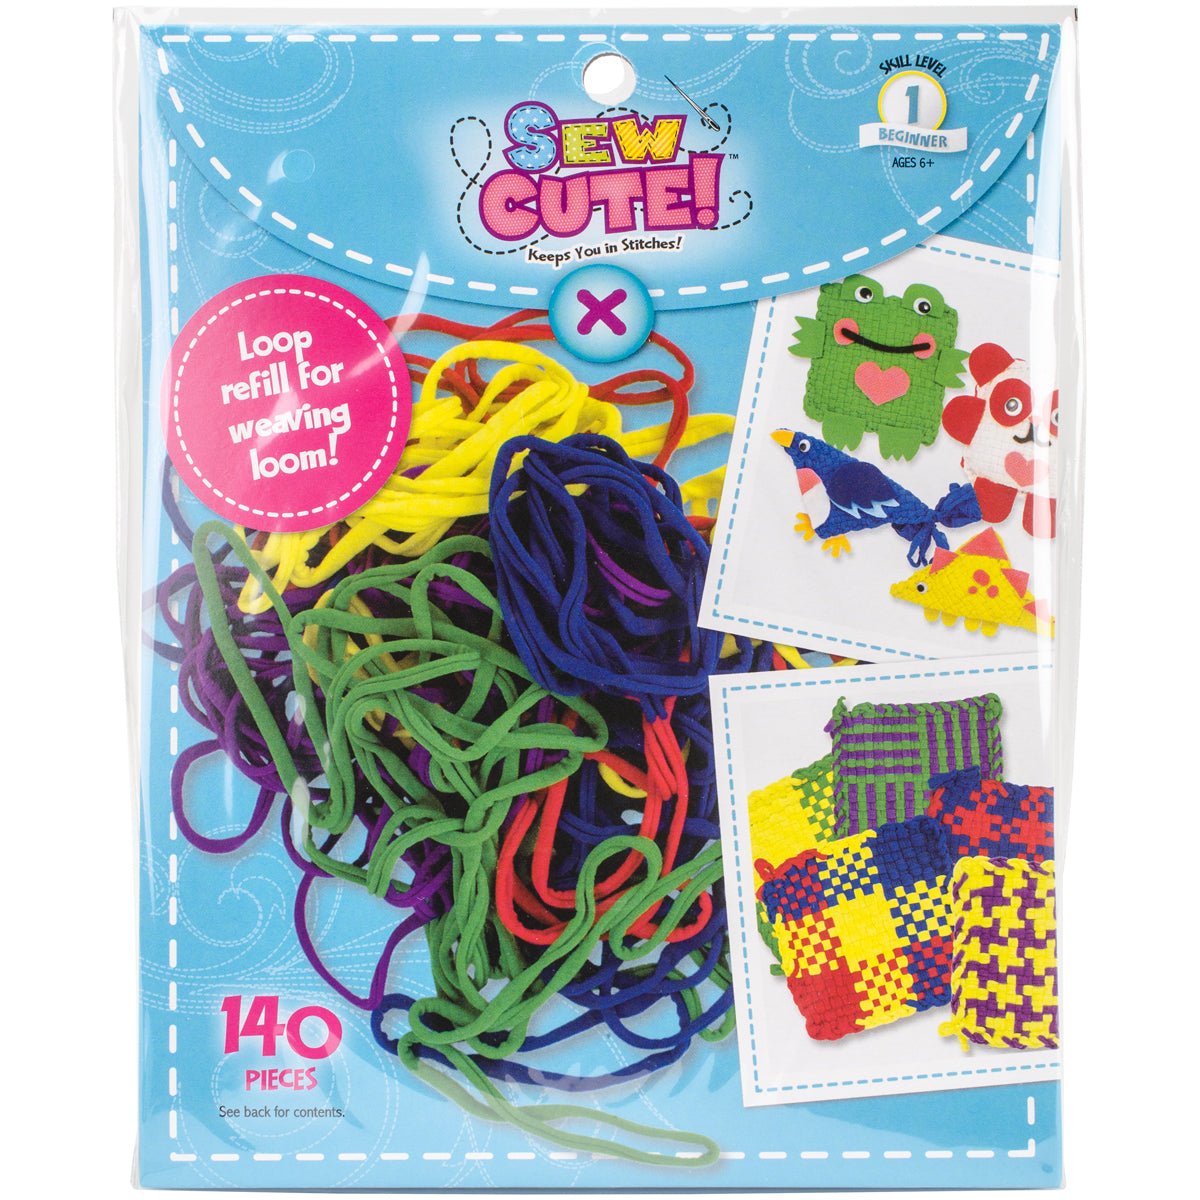 Sew Cute! Loom Loop Refill Kit Primary